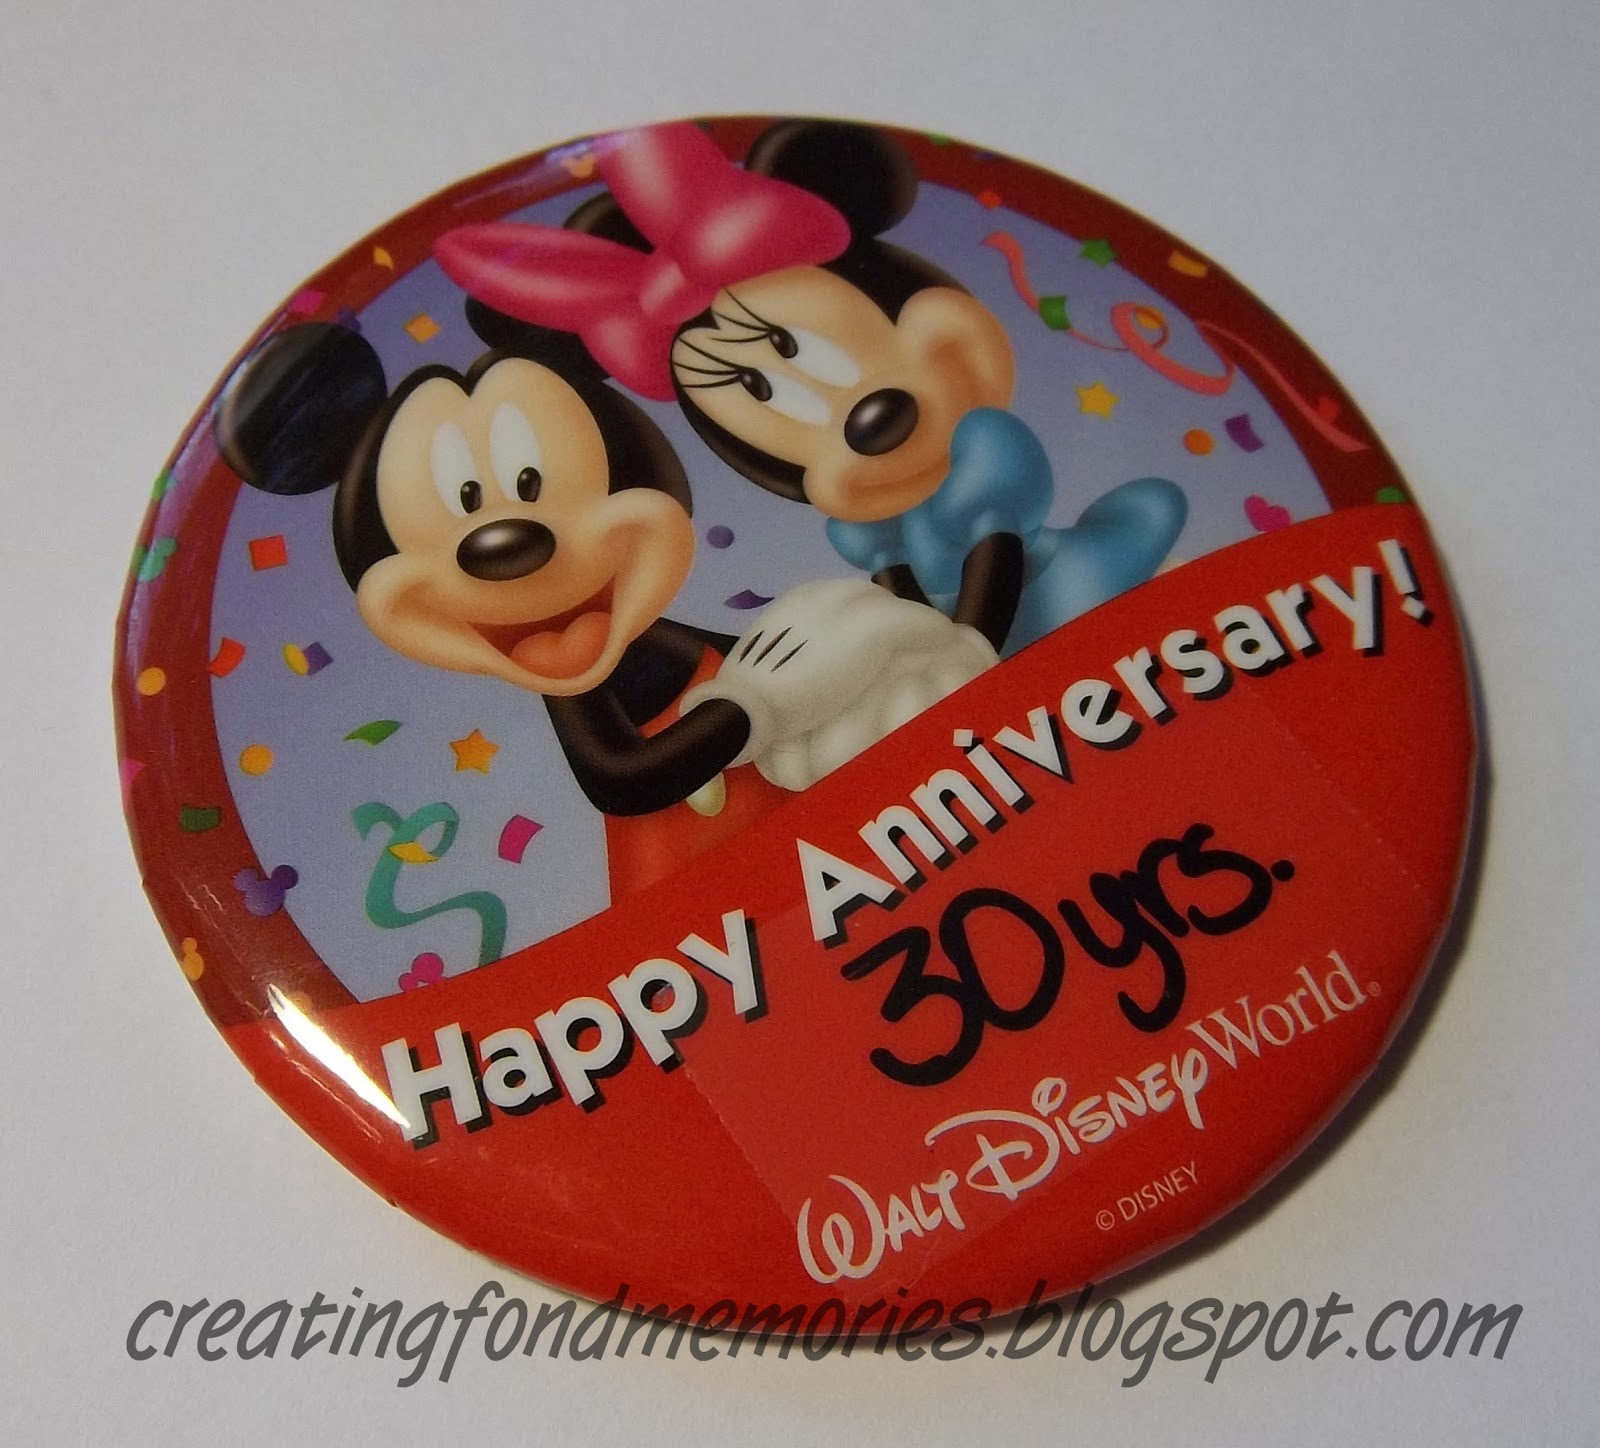 Disney World Our Happy Anniversary in Disney Scrapbook Paper Die Cut Piece